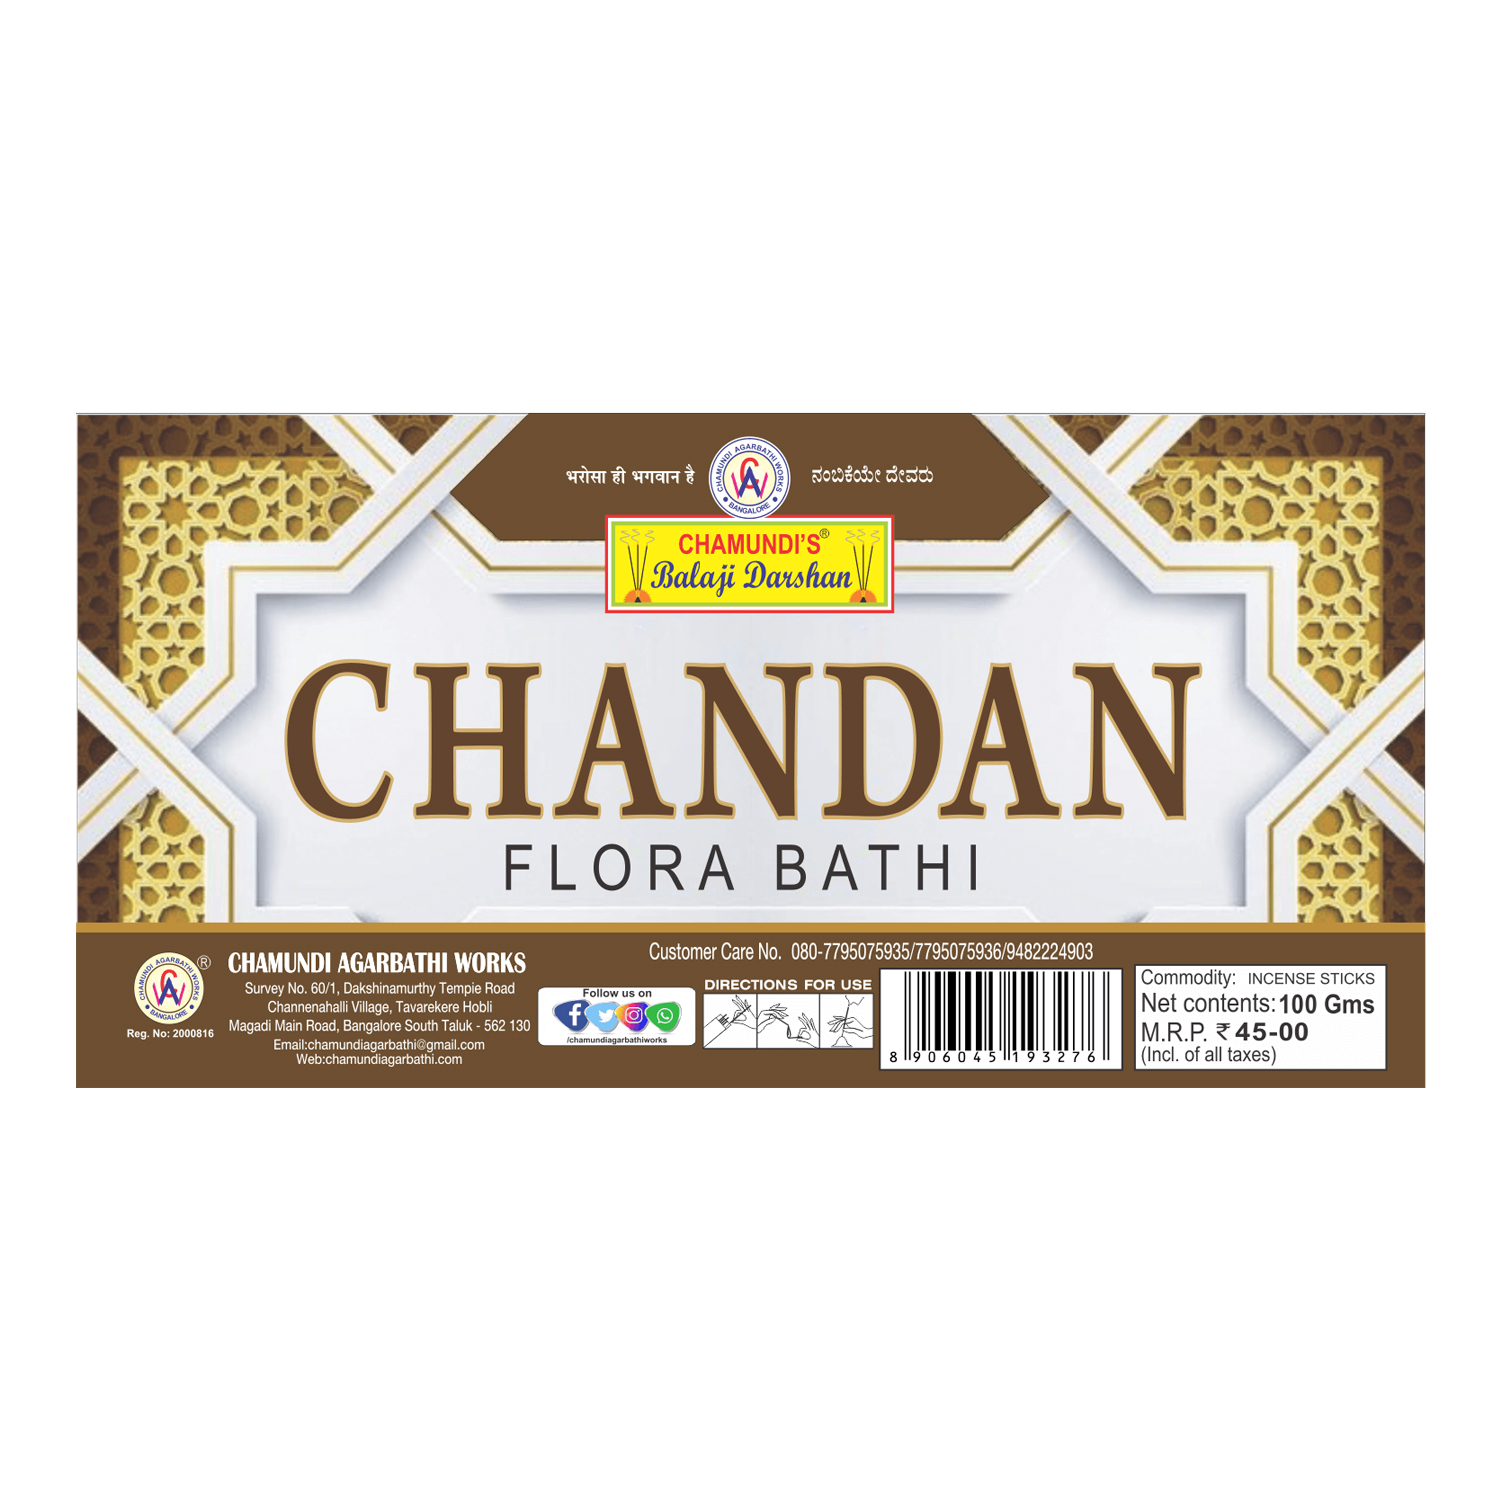 Chandan Flora Bathi